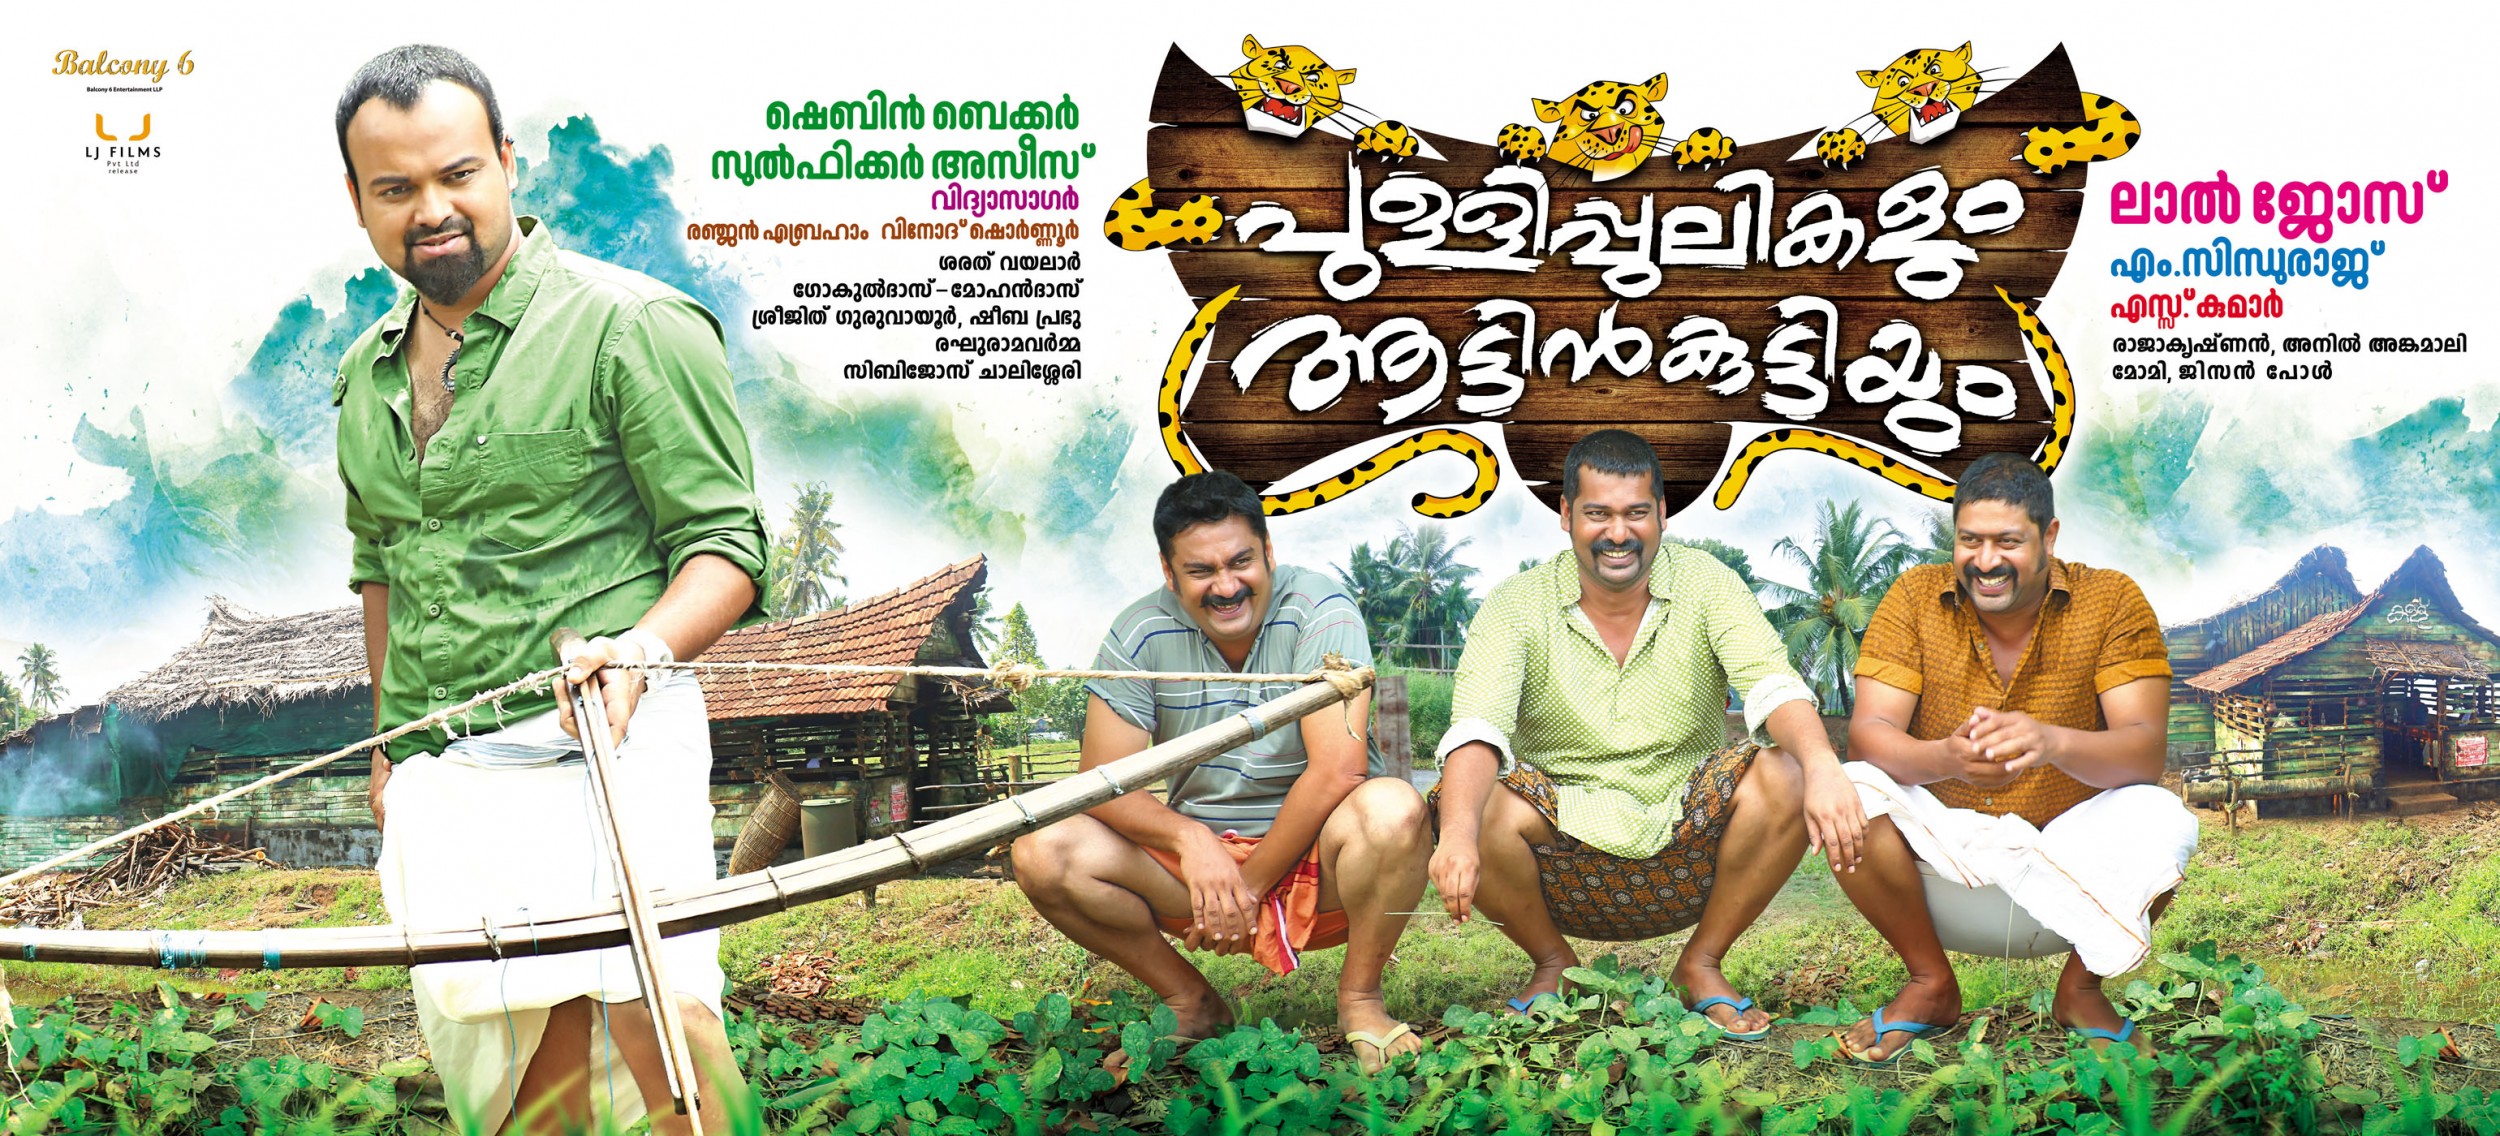 Mega Sized Movie Poster Image for Pullipulikalum Aattinkuttiyum (#2 of 2)